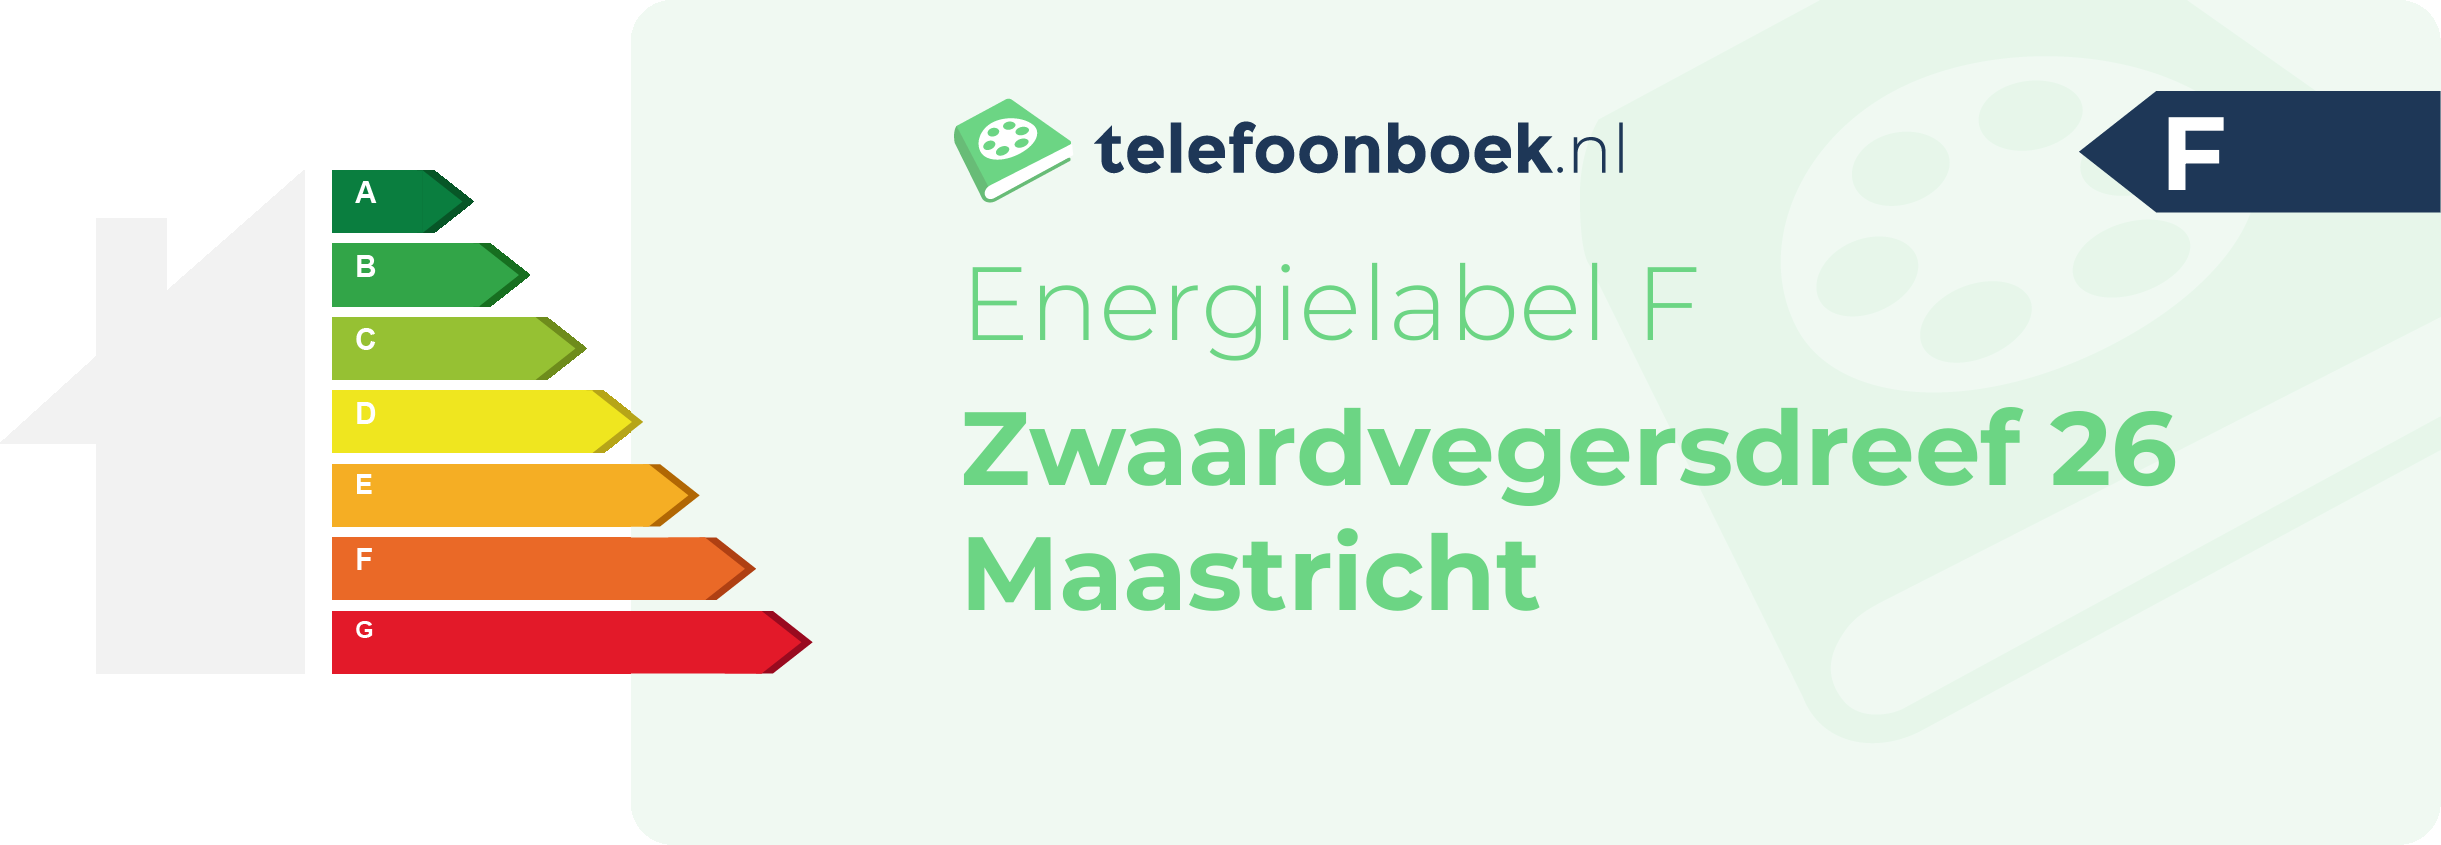 Energielabel Zwaardvegersdreef 26 Maastricht